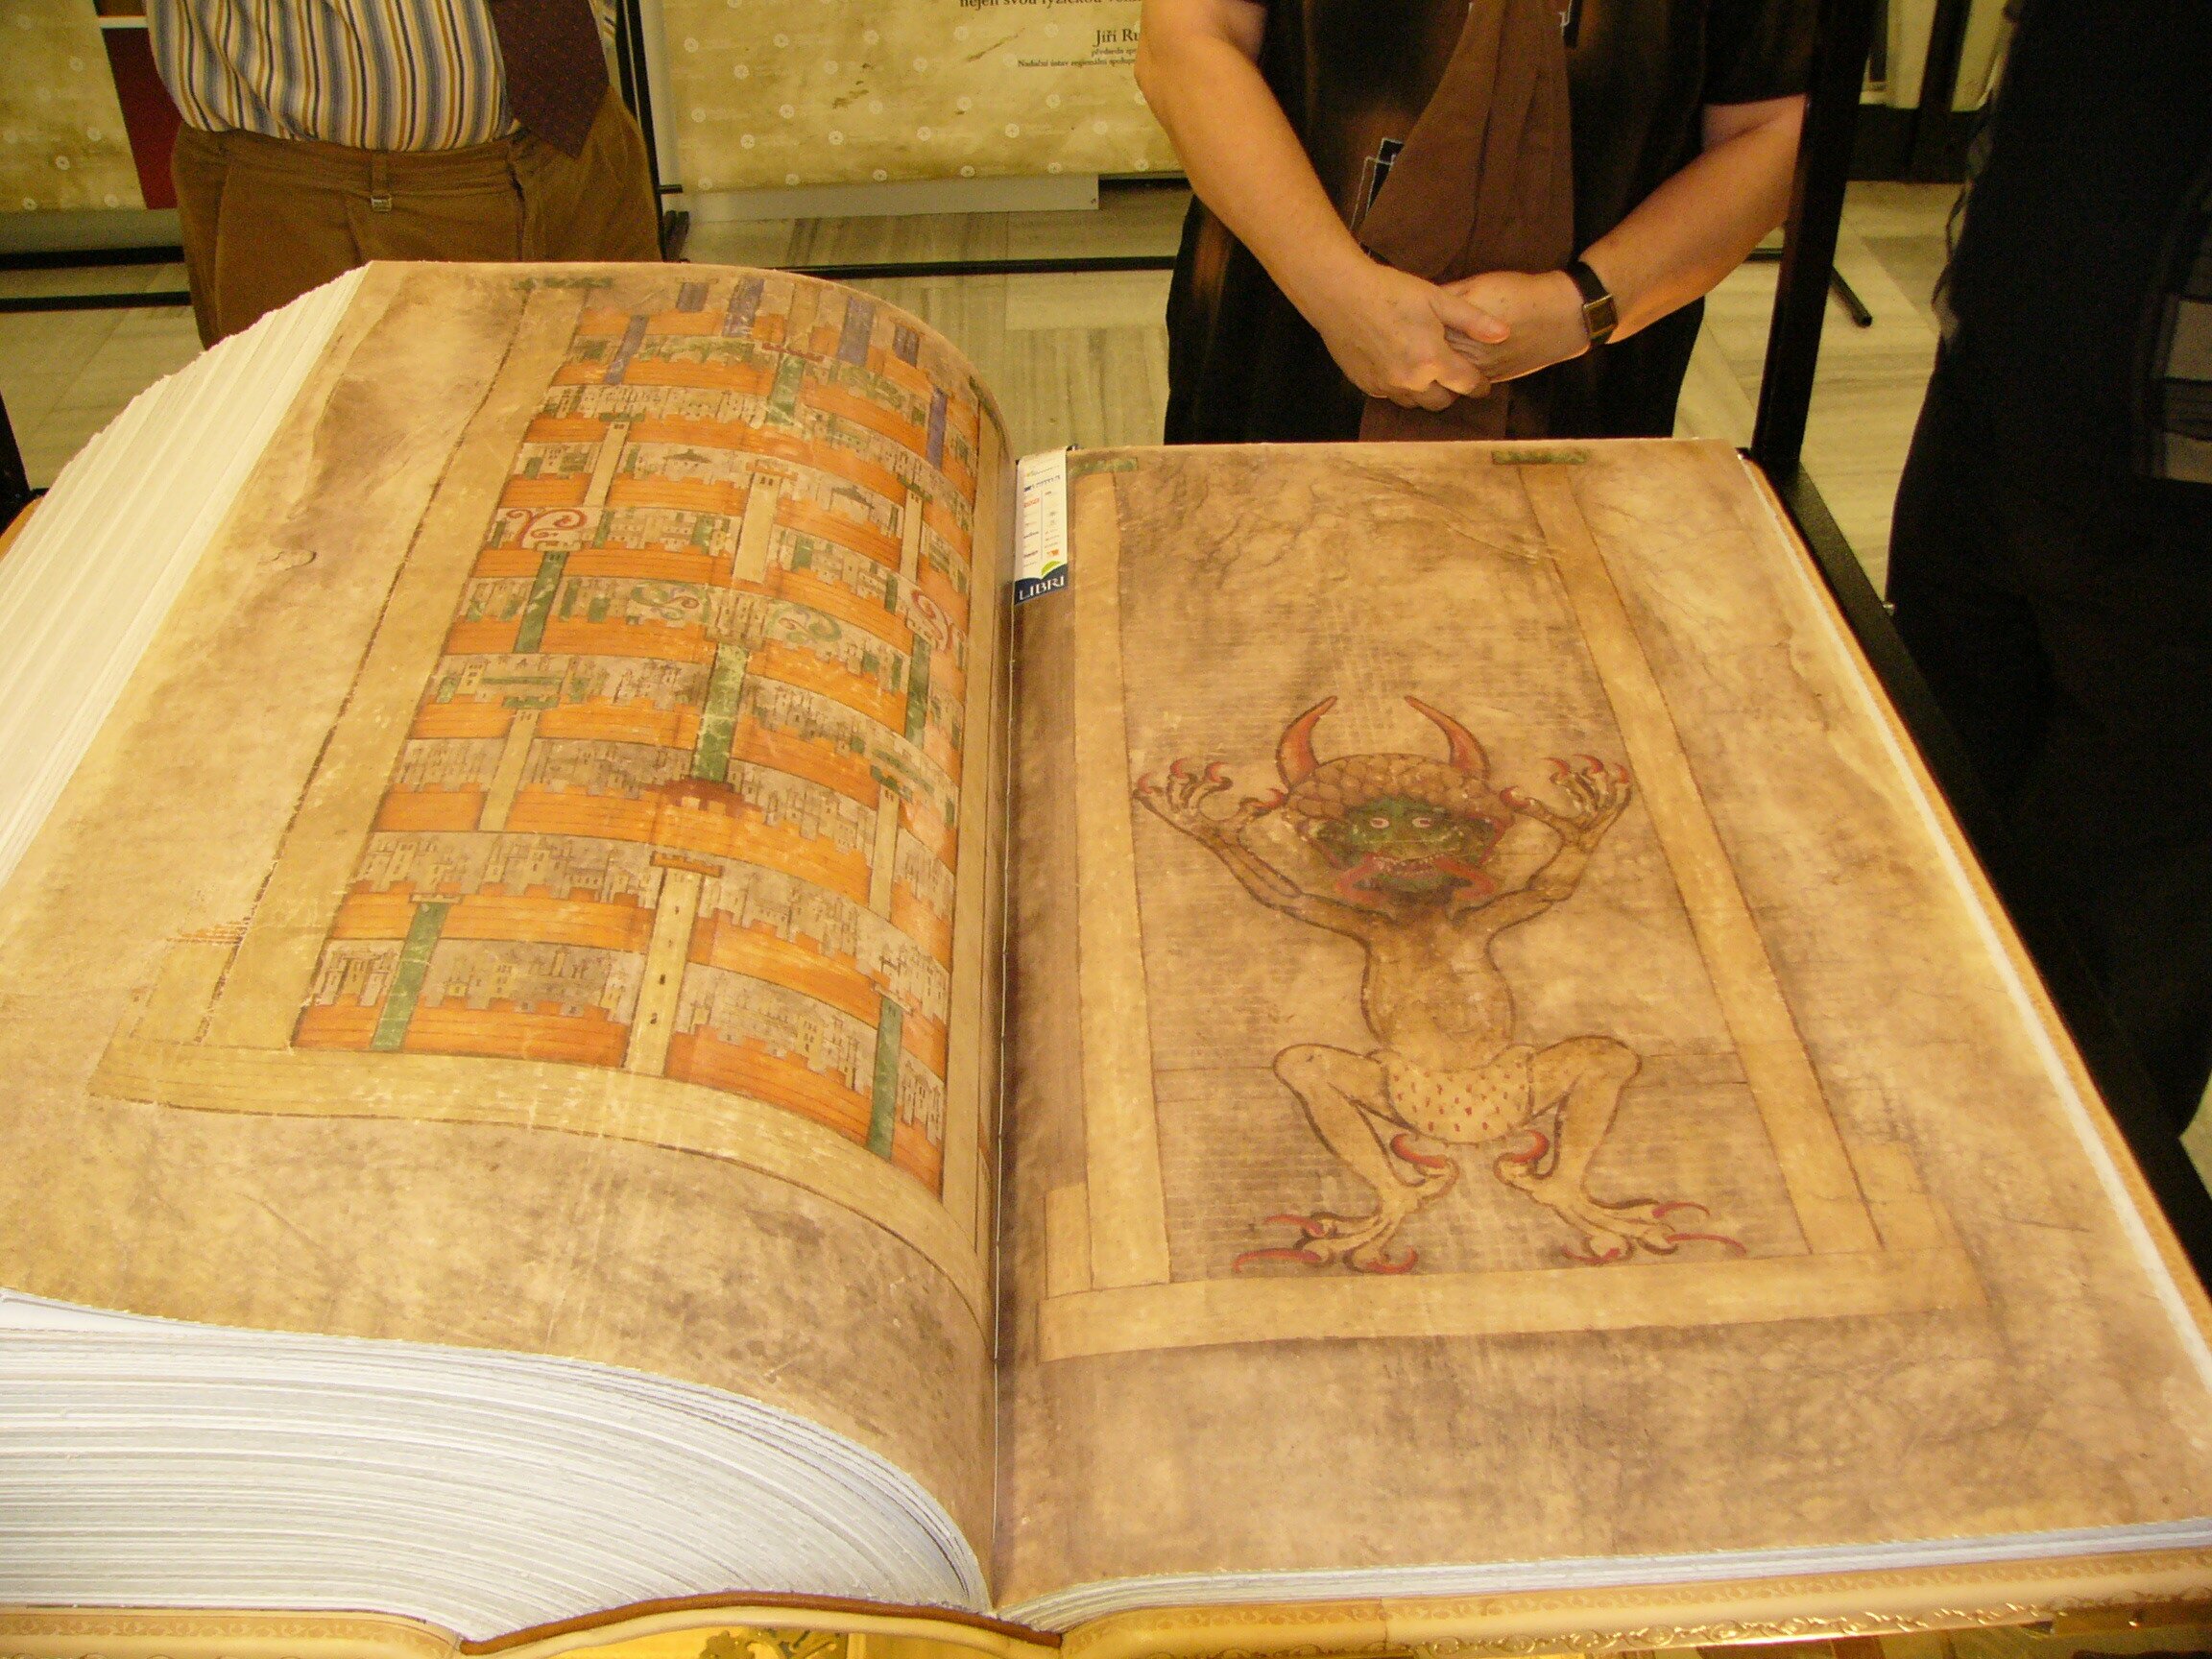 Book of since. Кодекс Гигас («Библия дьявола»). Самая большая книга в мире кодекс Гигас. Книга Гигас Библия дьявола. Манускрипт Библия дьявола.